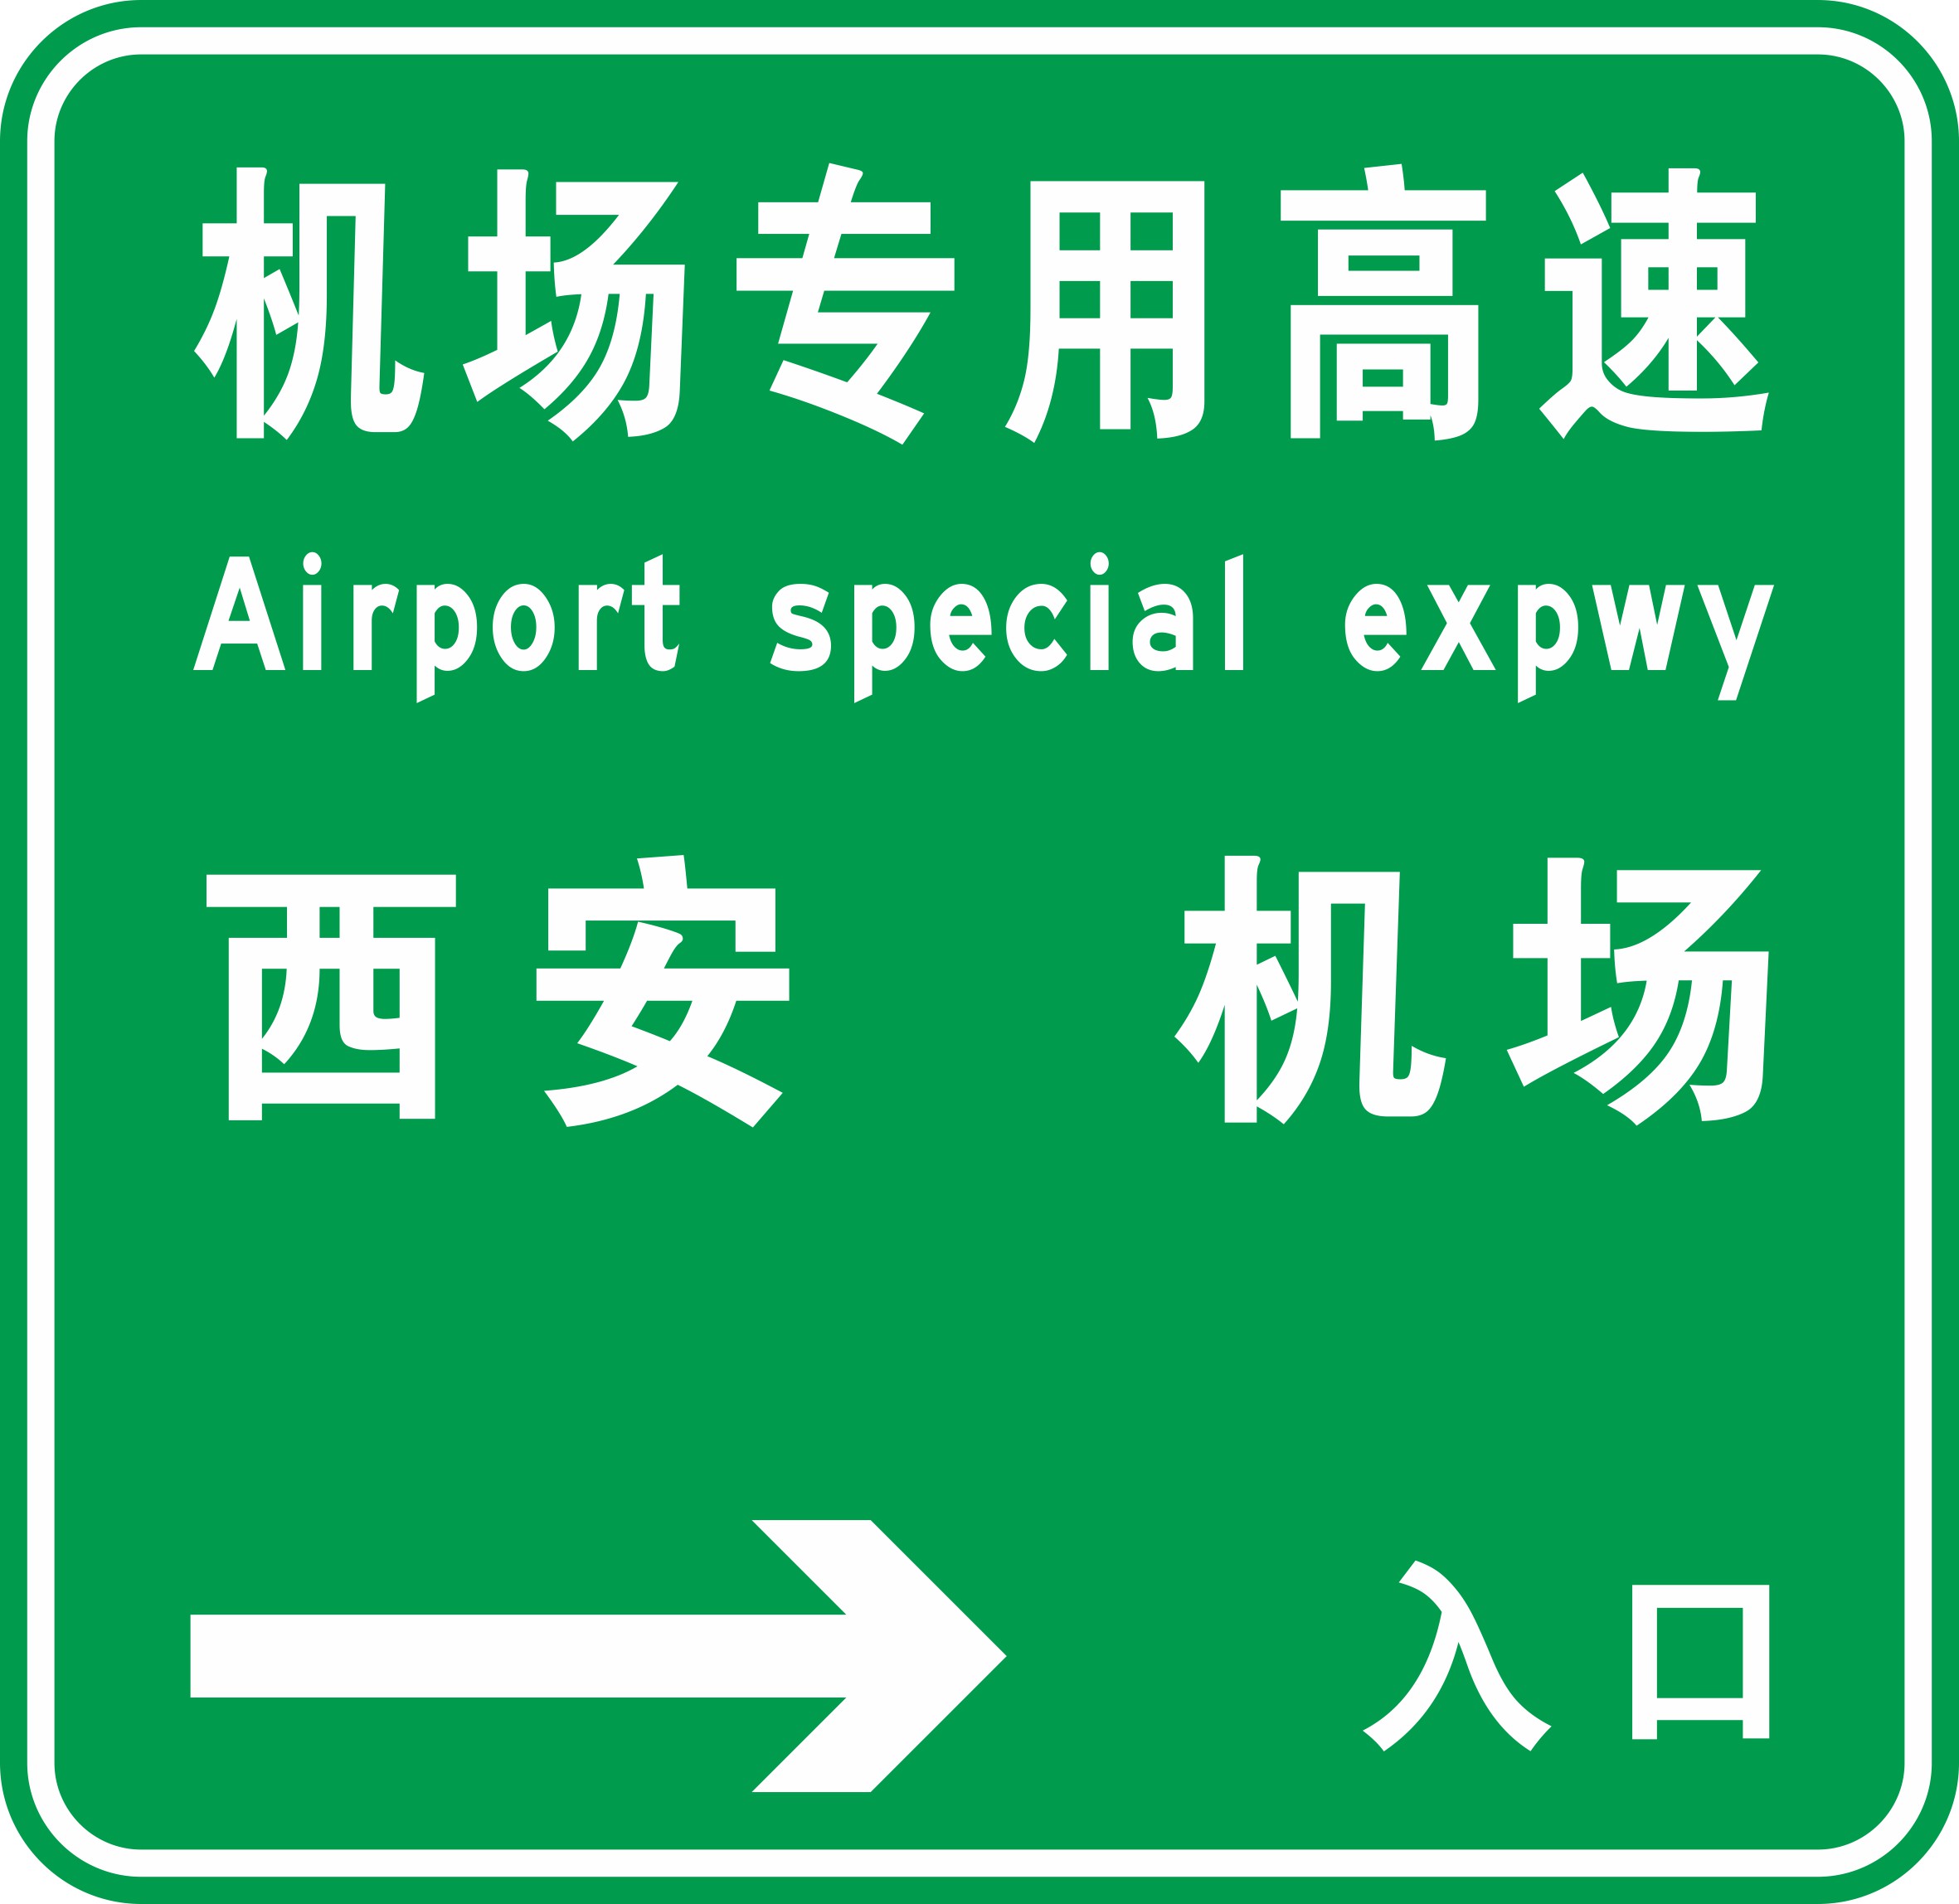 机场专用高速公路秦汉立交收费站交通标志工程投入使用